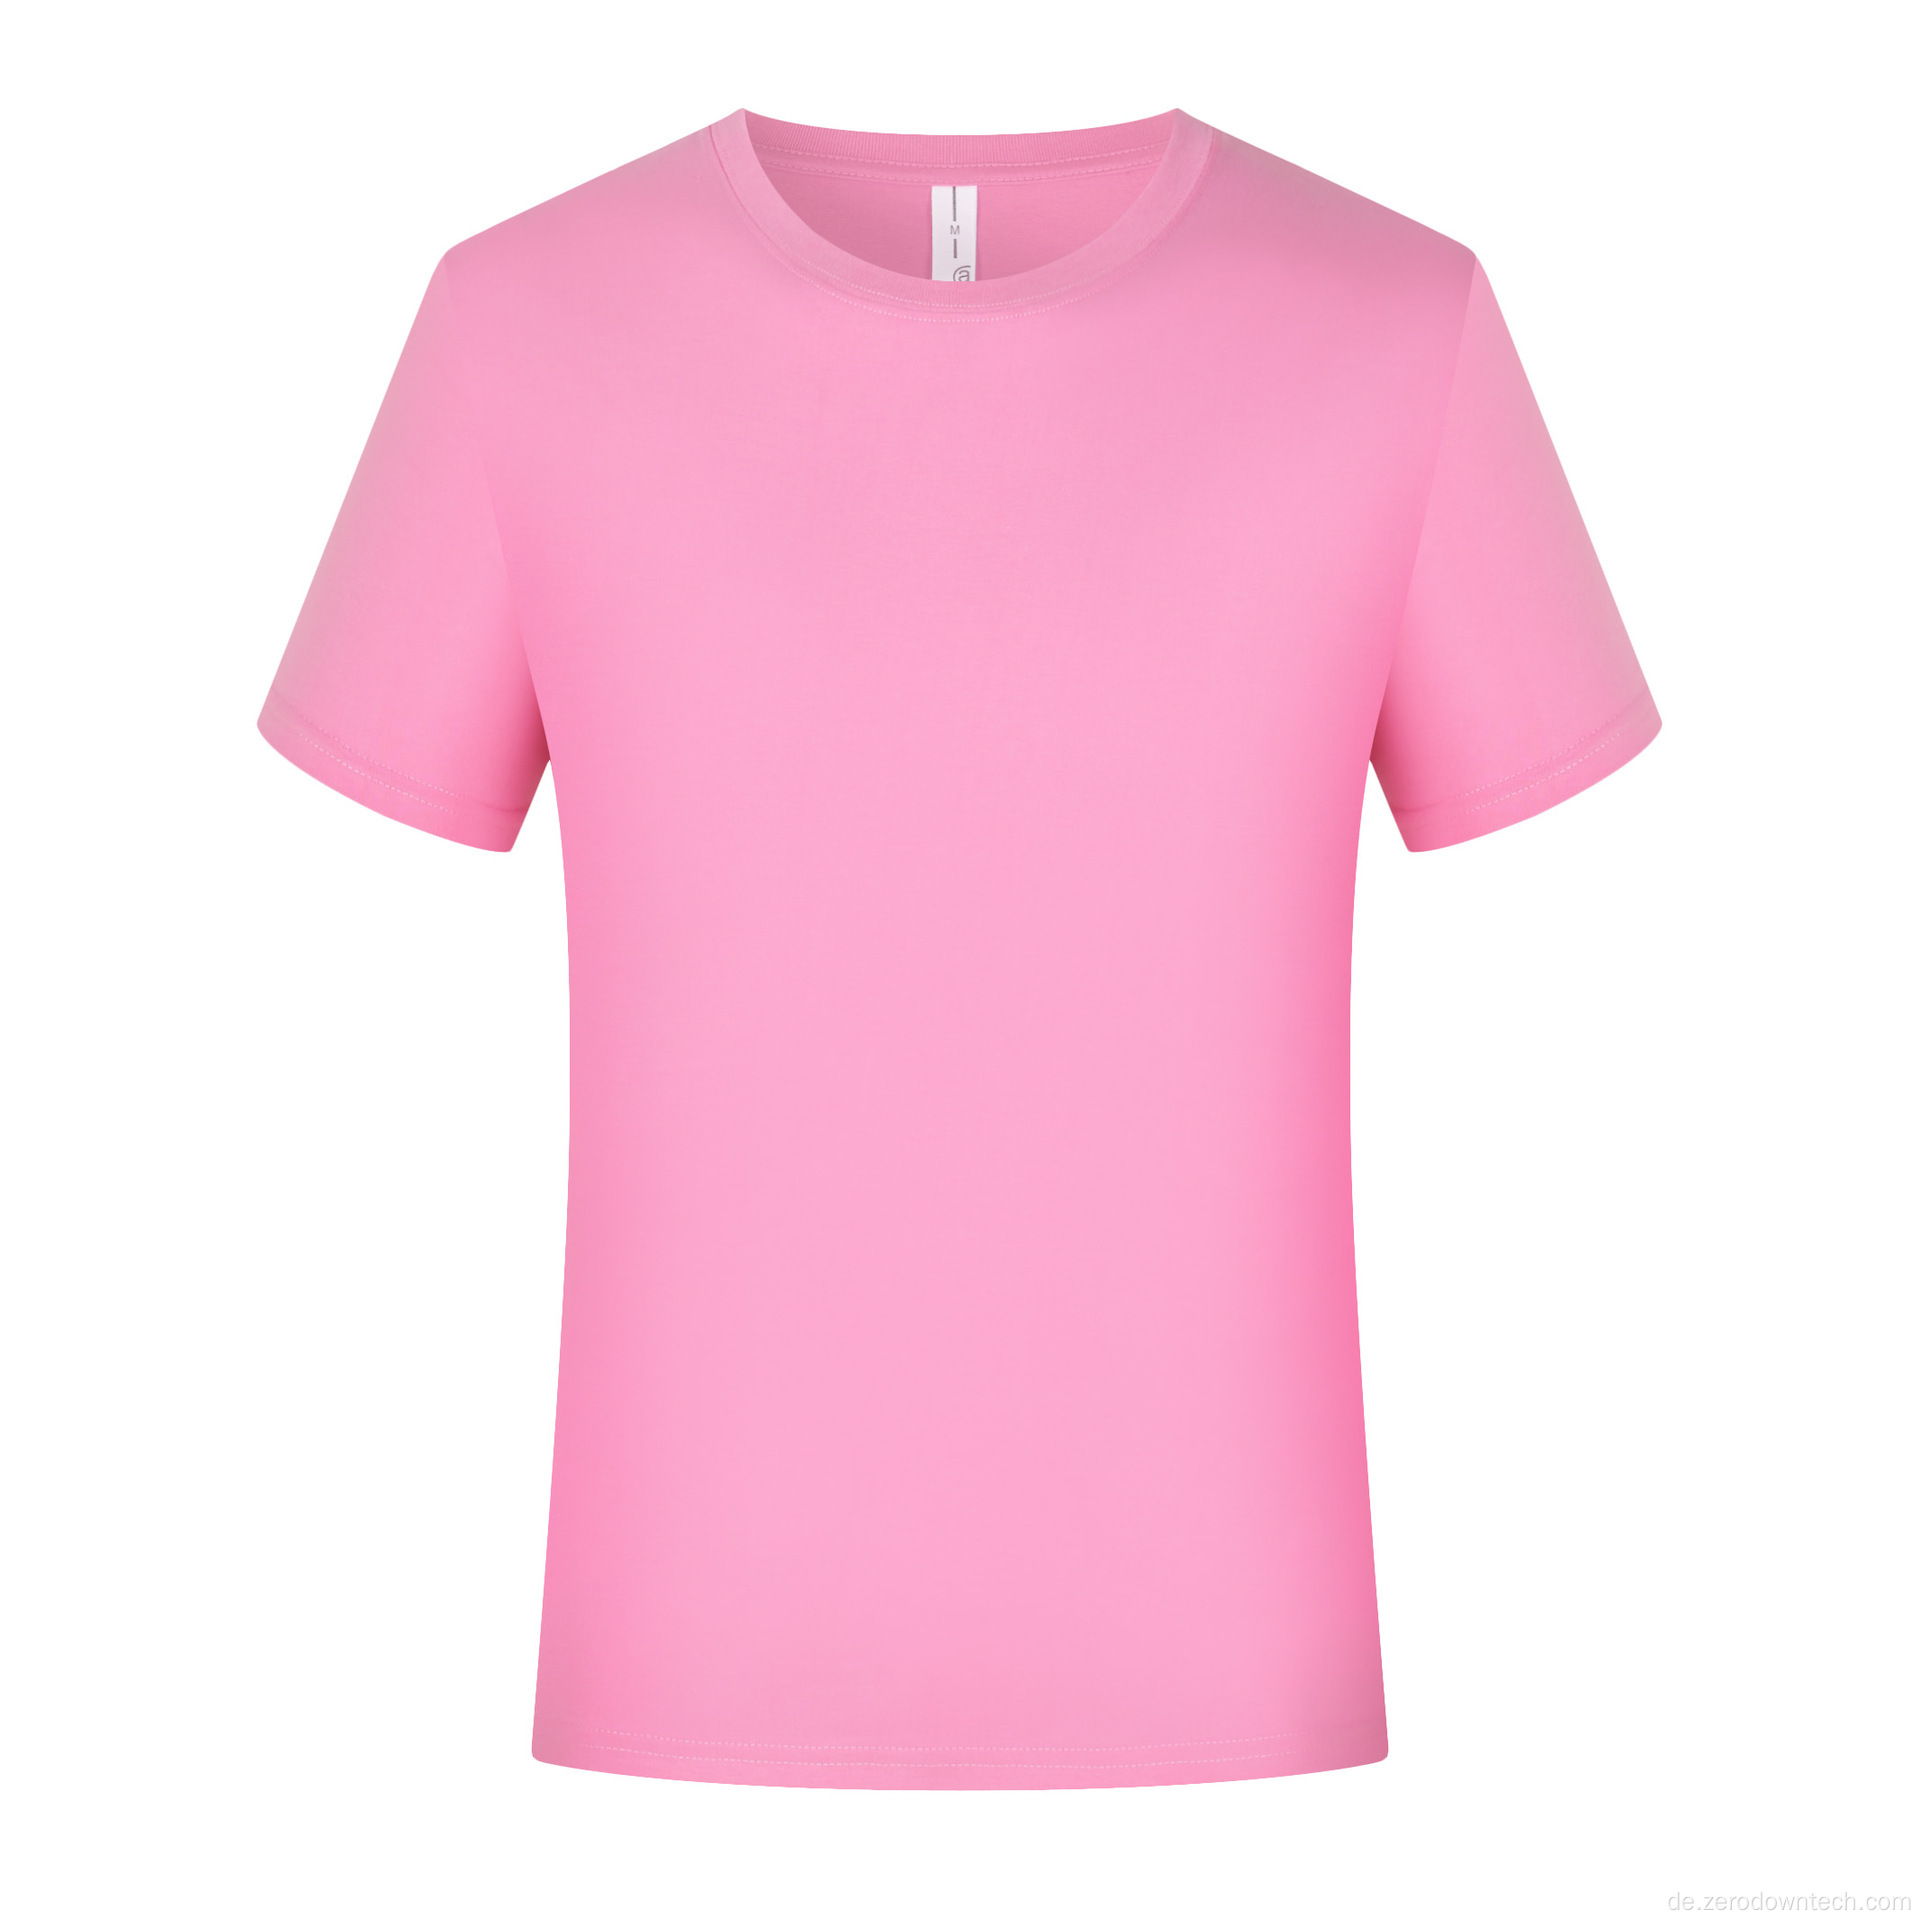 Benutzerdefinierter Druck 100% Baumwolle Casual Tee Blank T-Shirts